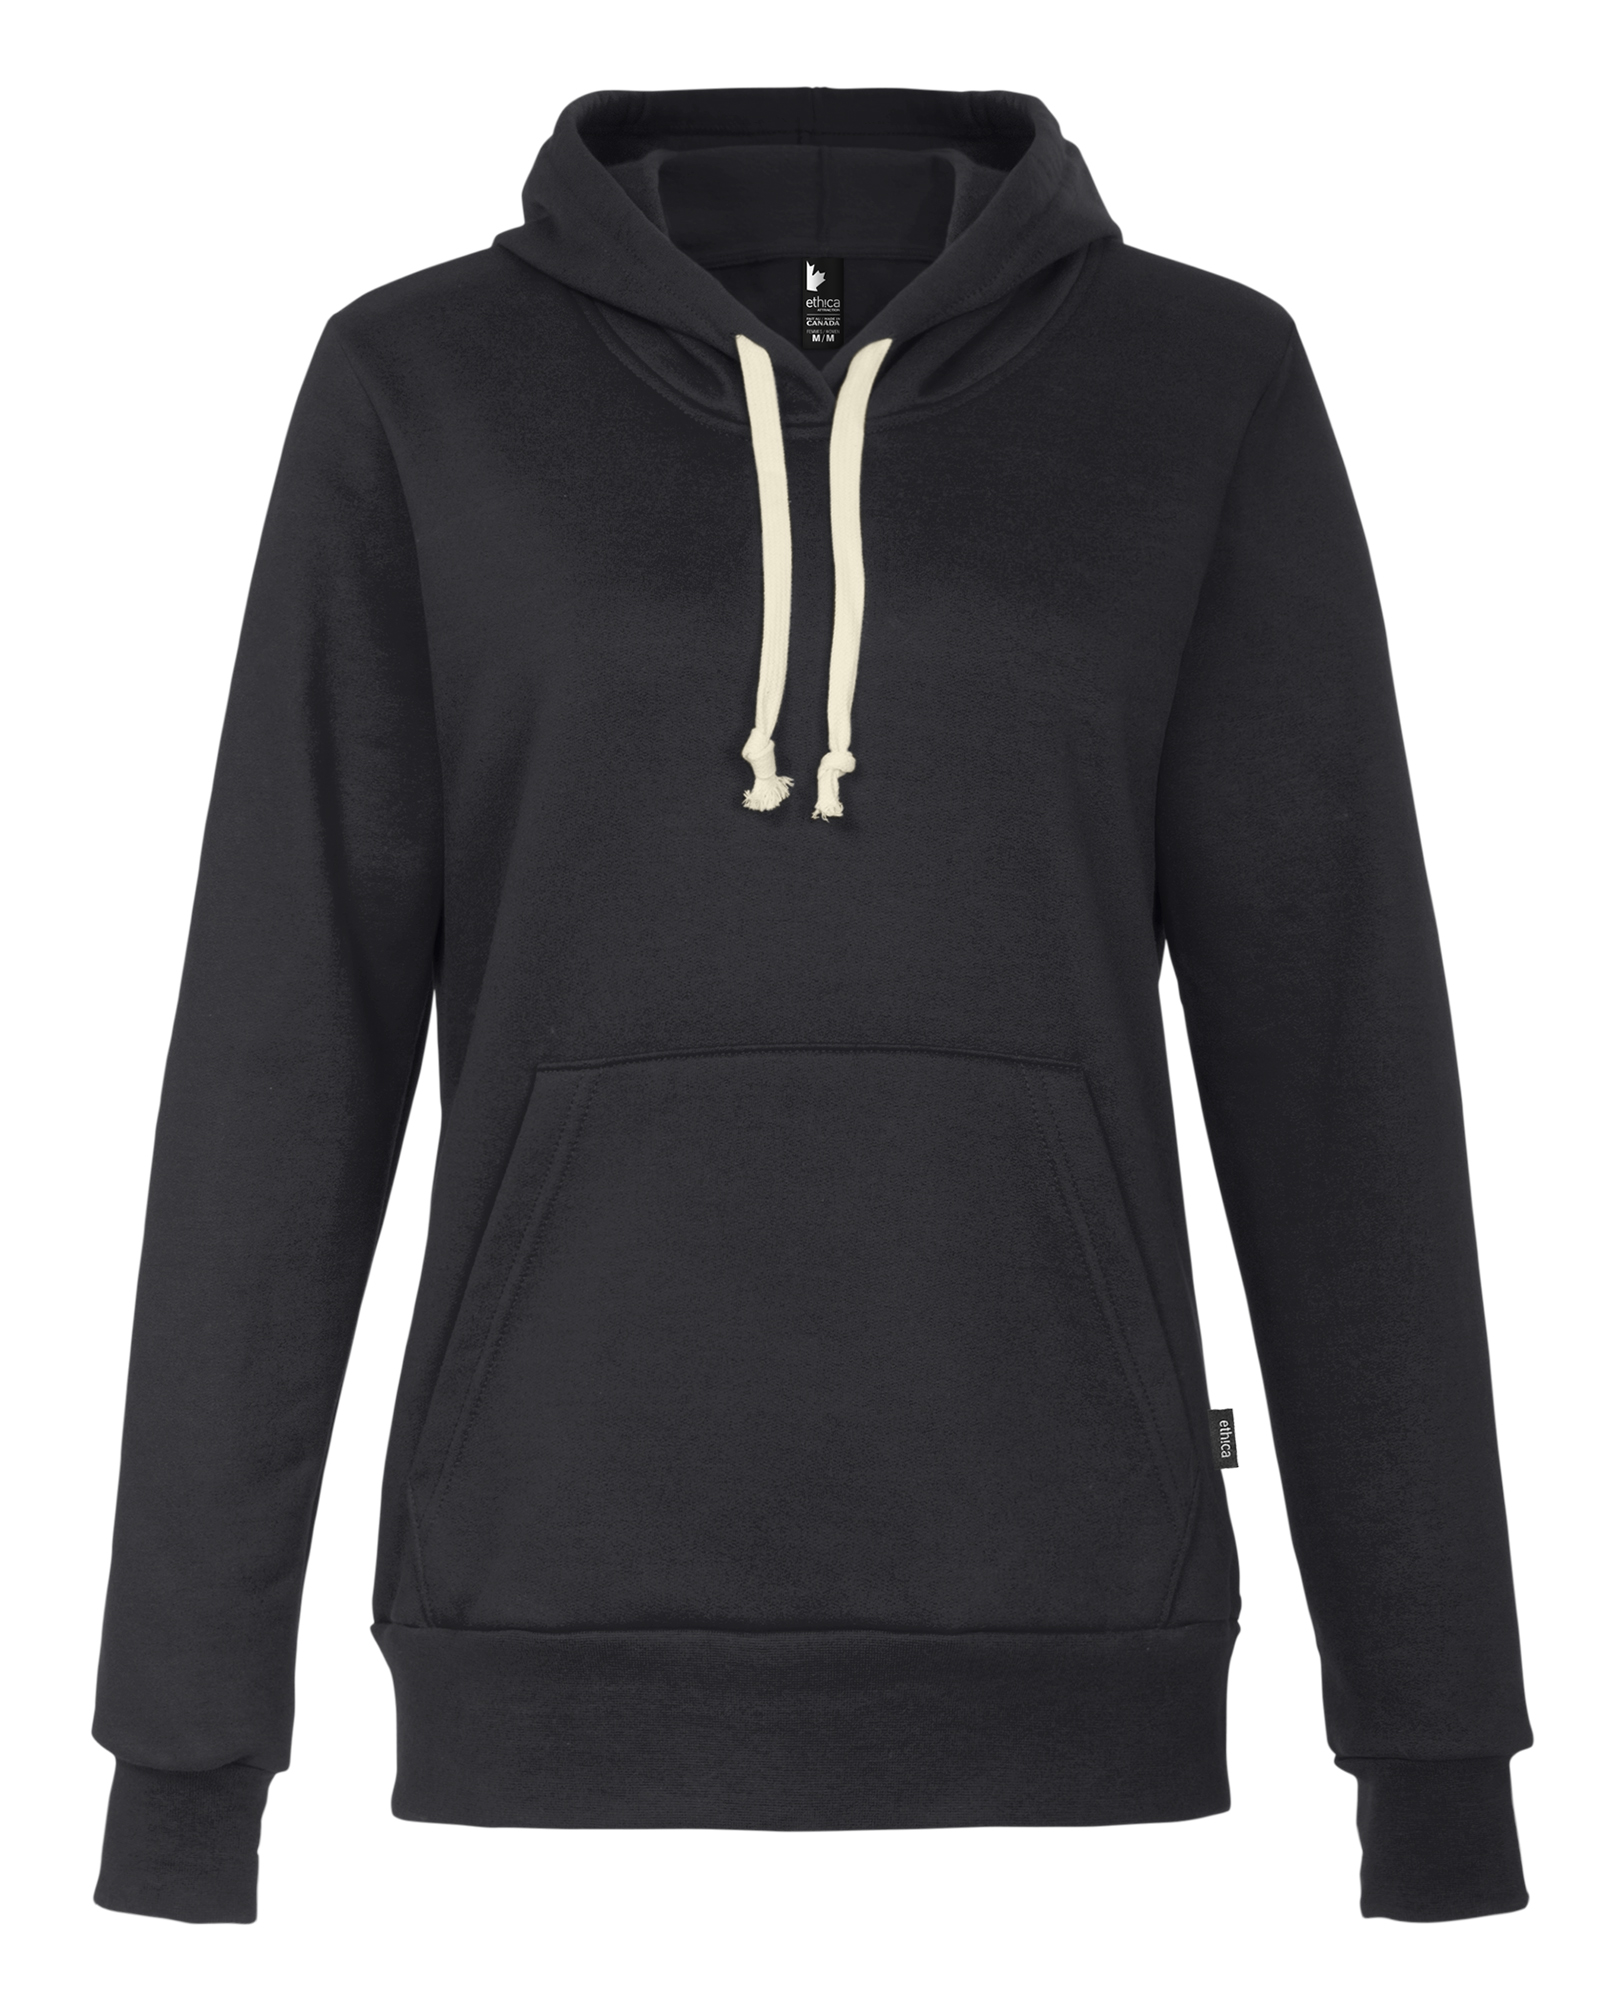 100L42W - Women's hooded sweatshirt - Attraction